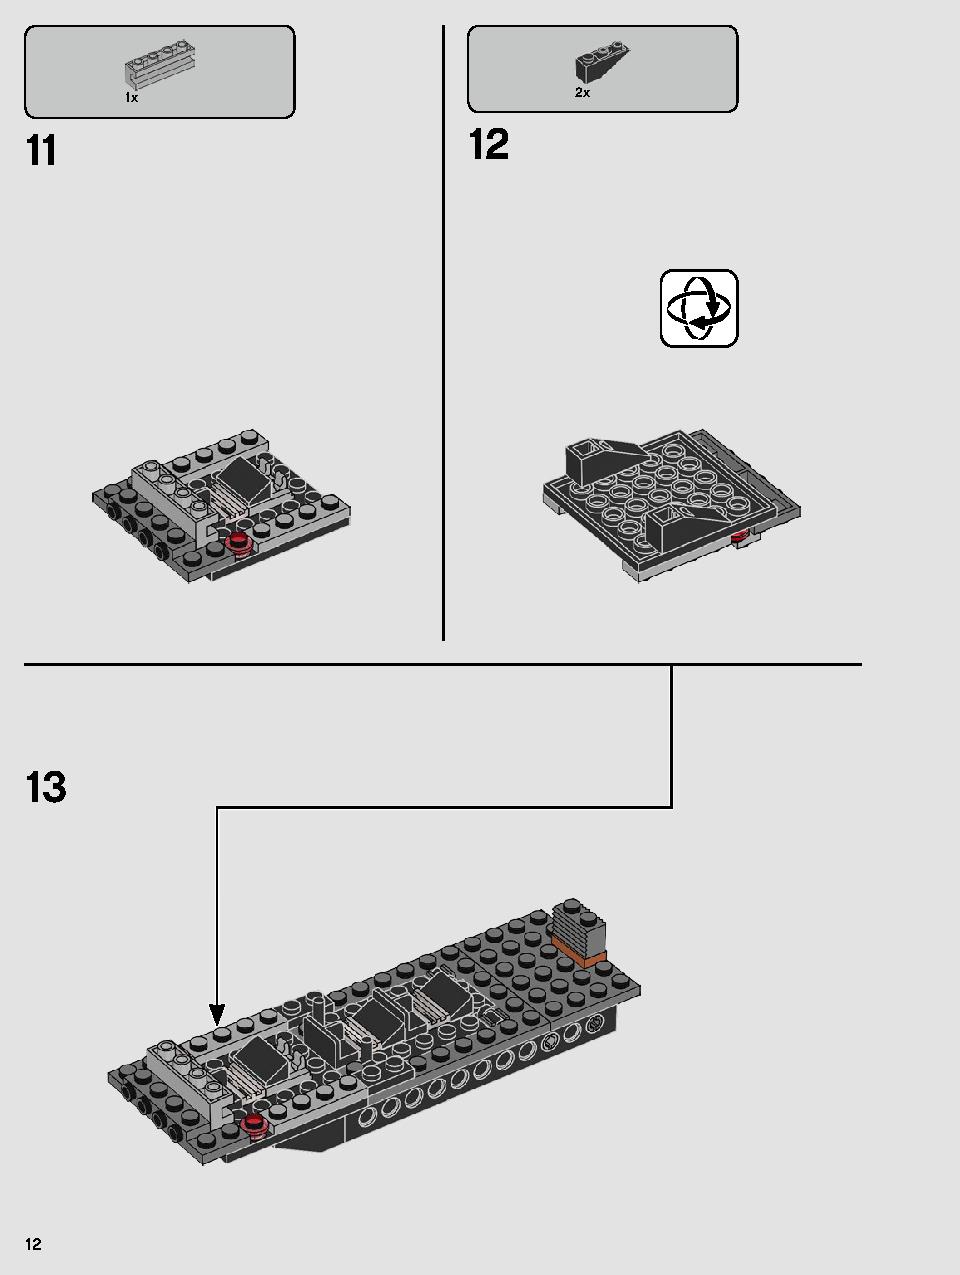 스타워즈 카일로 렌의 셔틀™ 75256 레고 세트 제품정보 레고 조립설명서 12 page